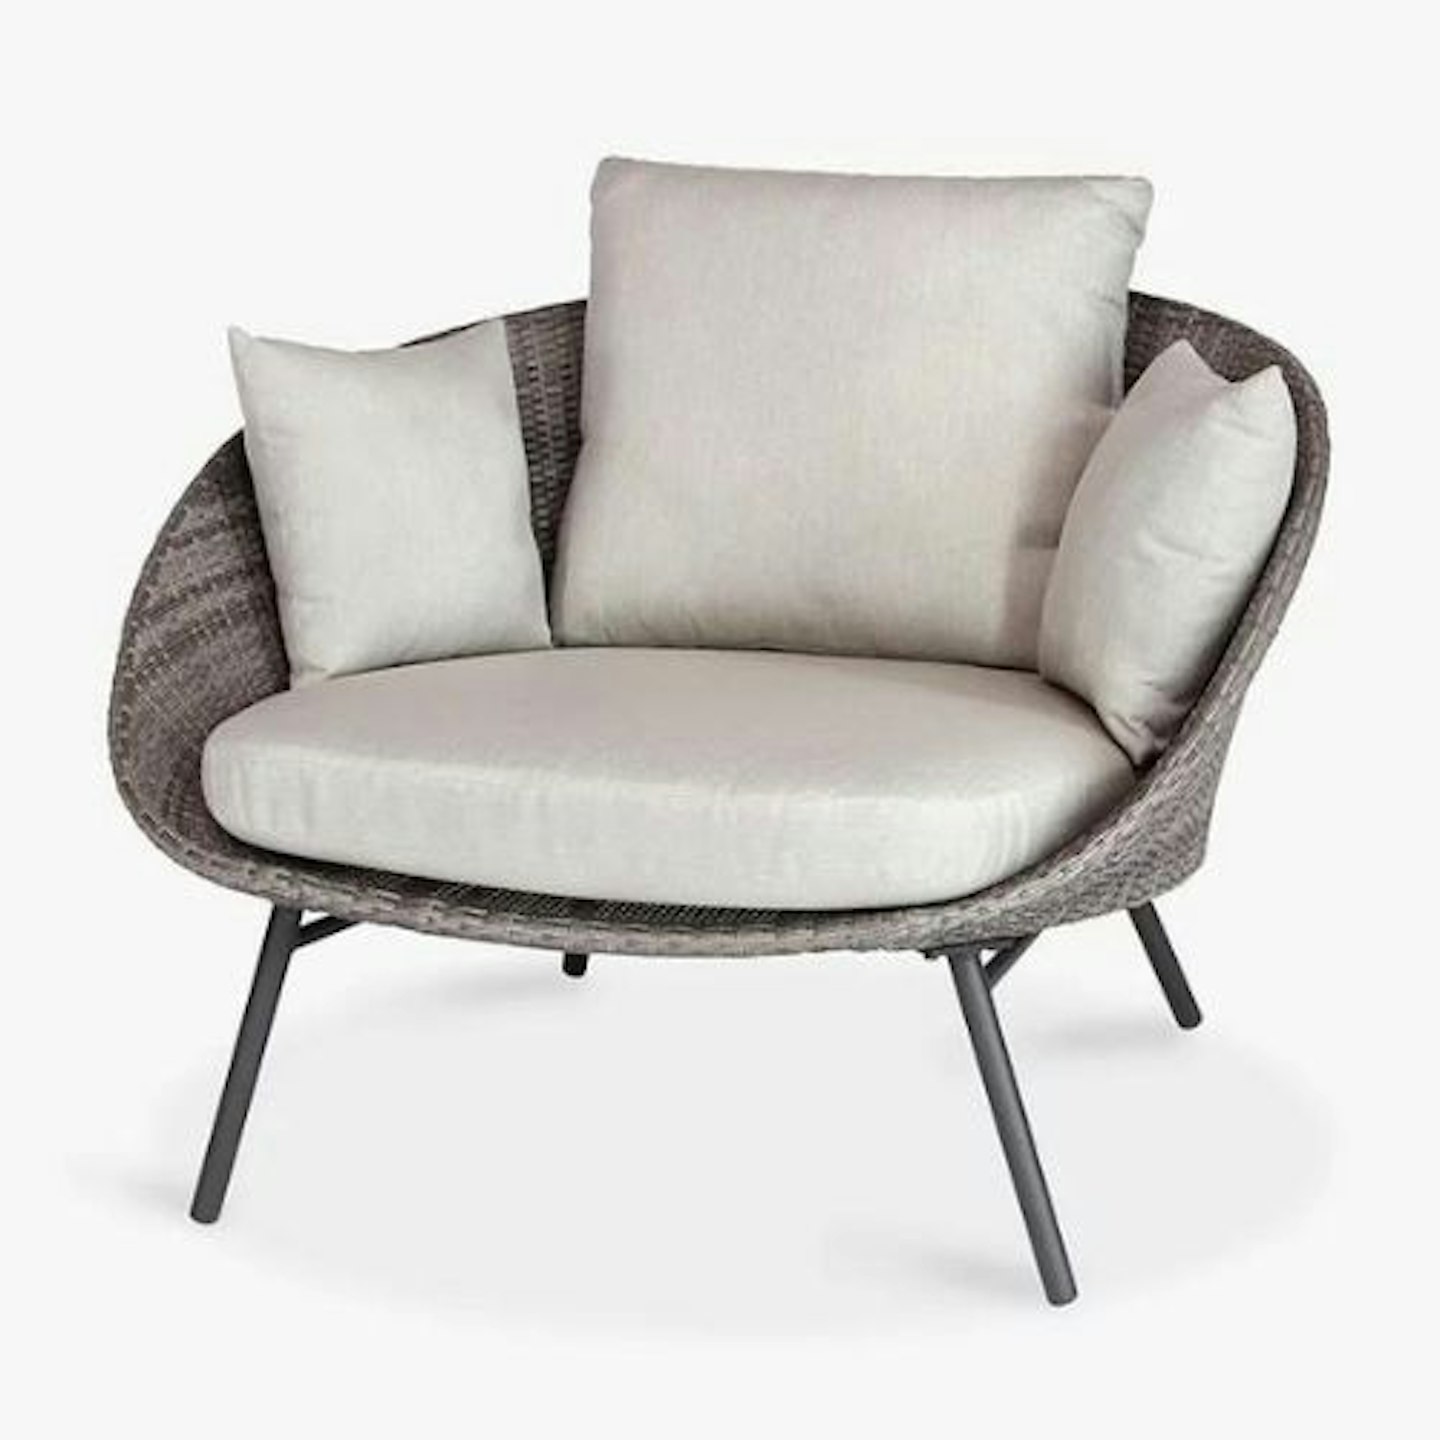 KETTLER LaMode Comfort Garden Lounging Chair